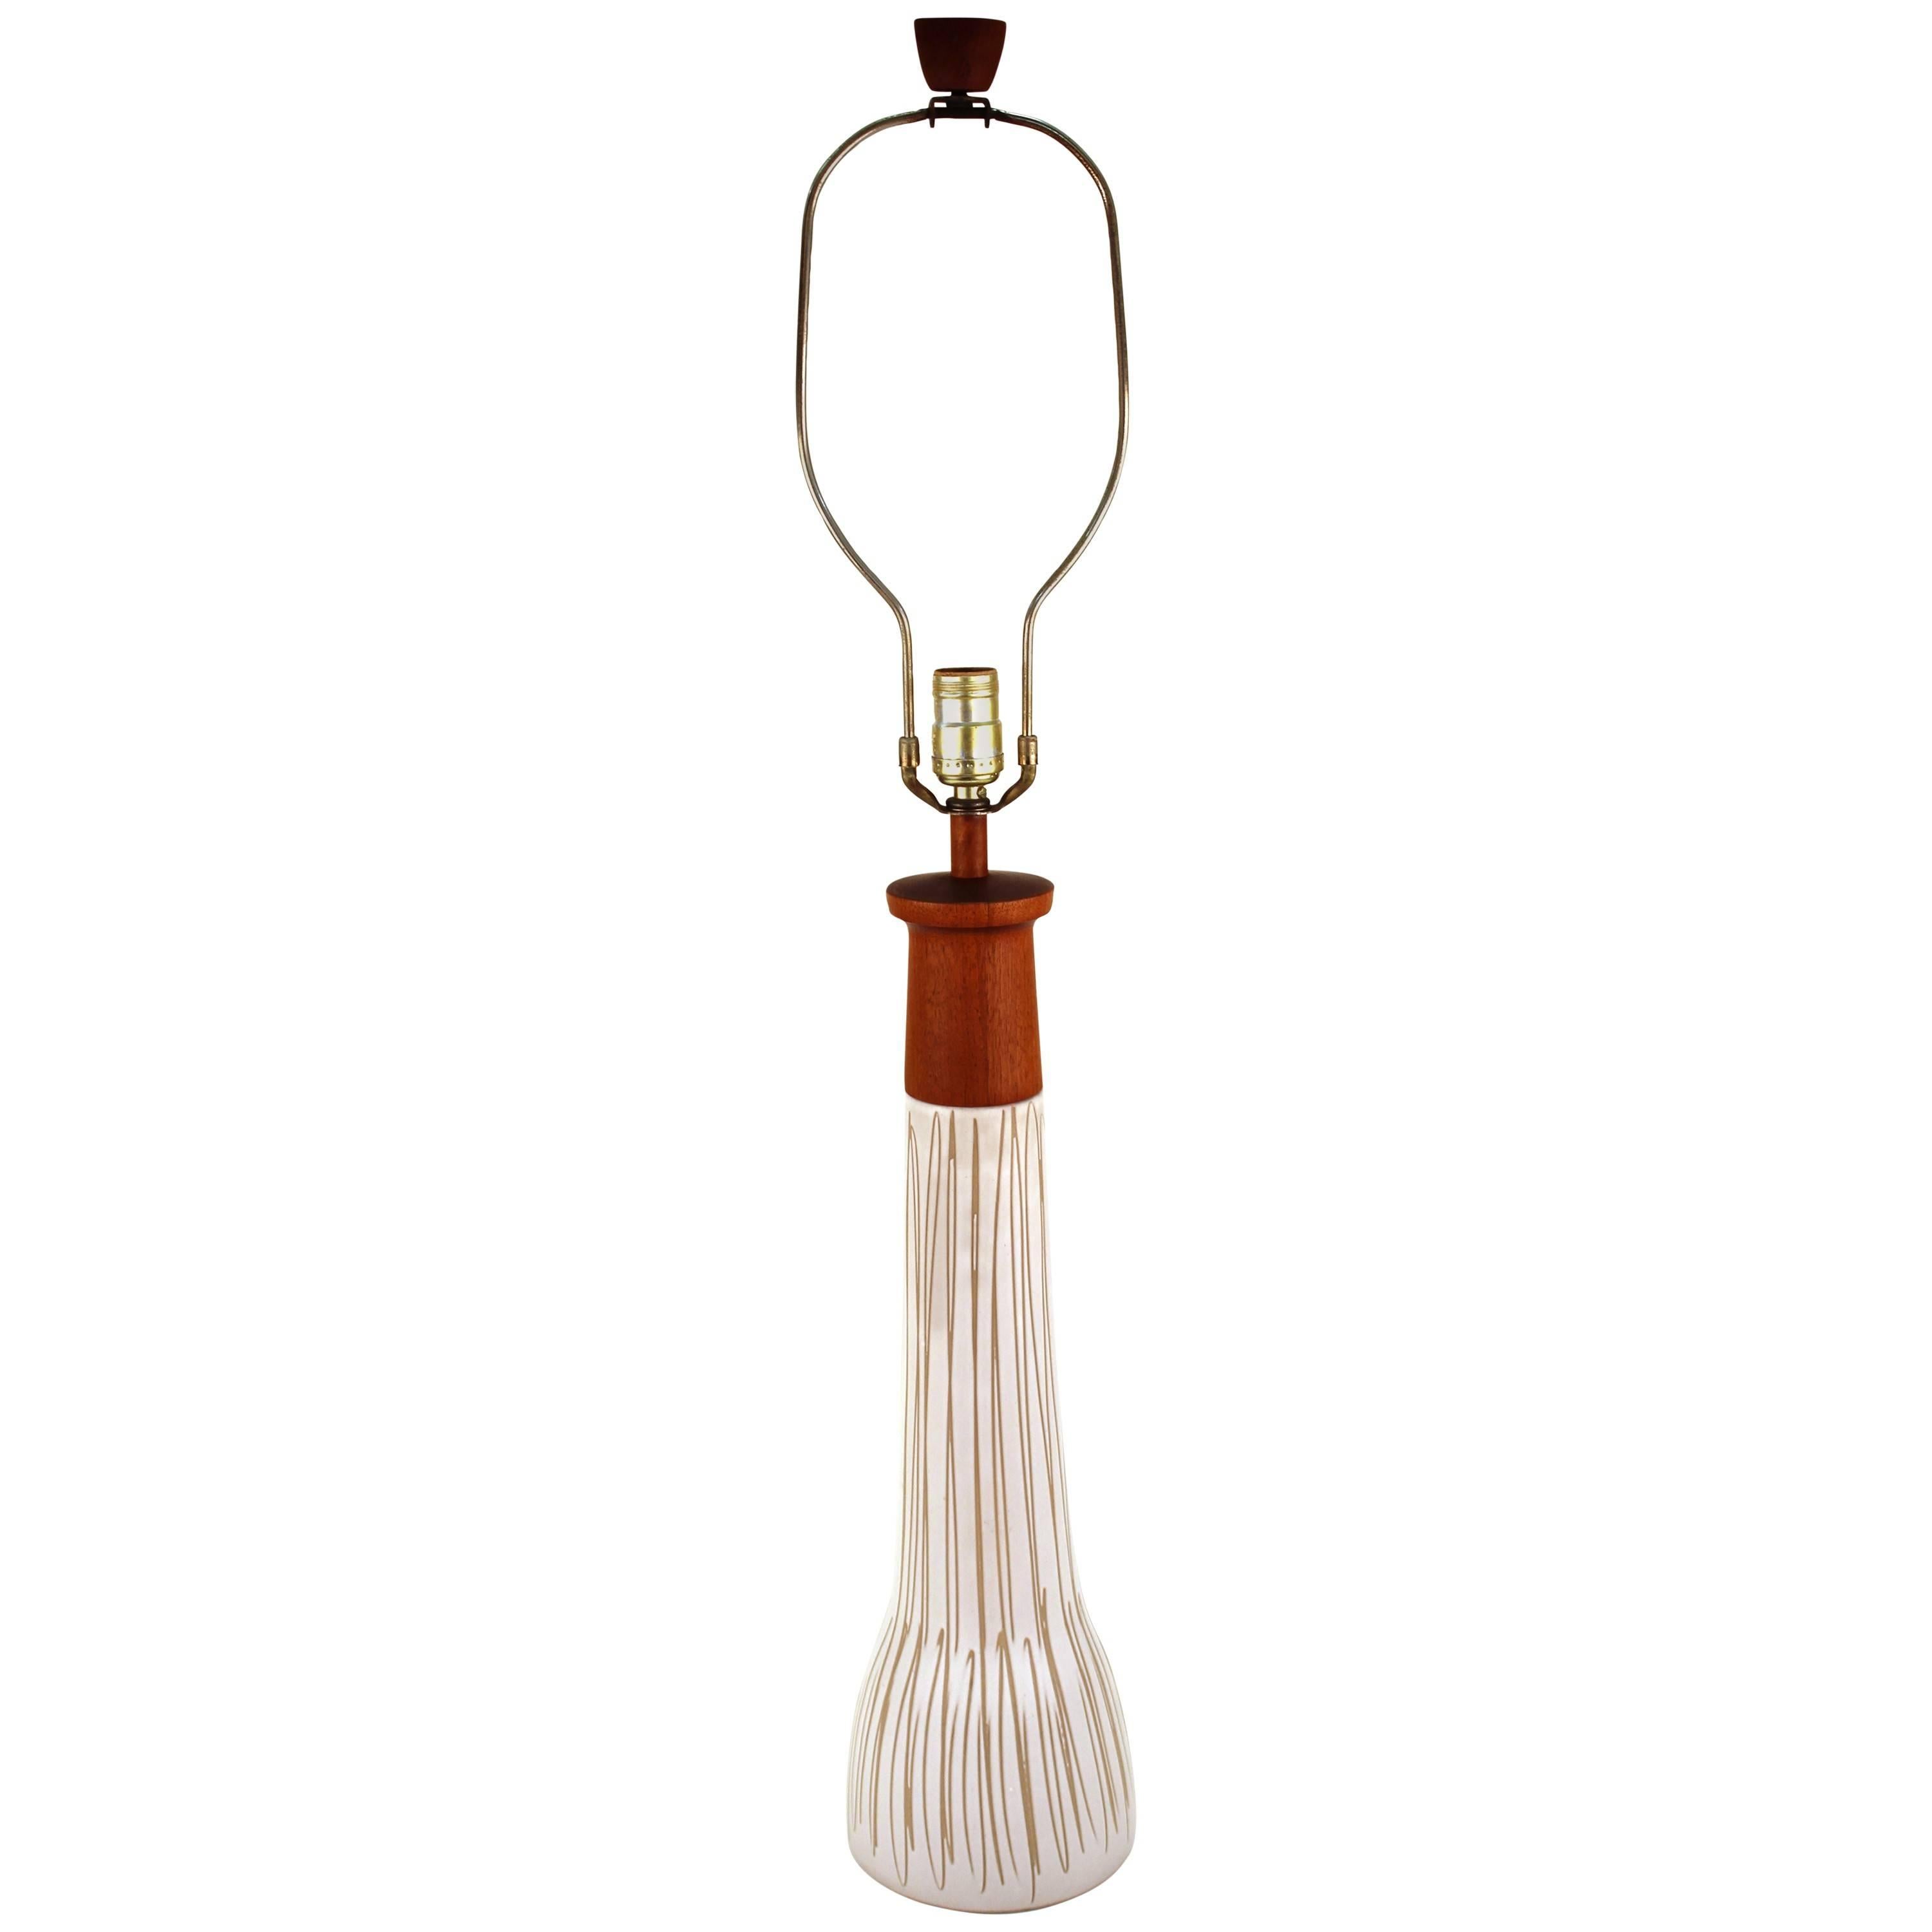 Gordon Martz Midcentury Ceramic Table Lamp